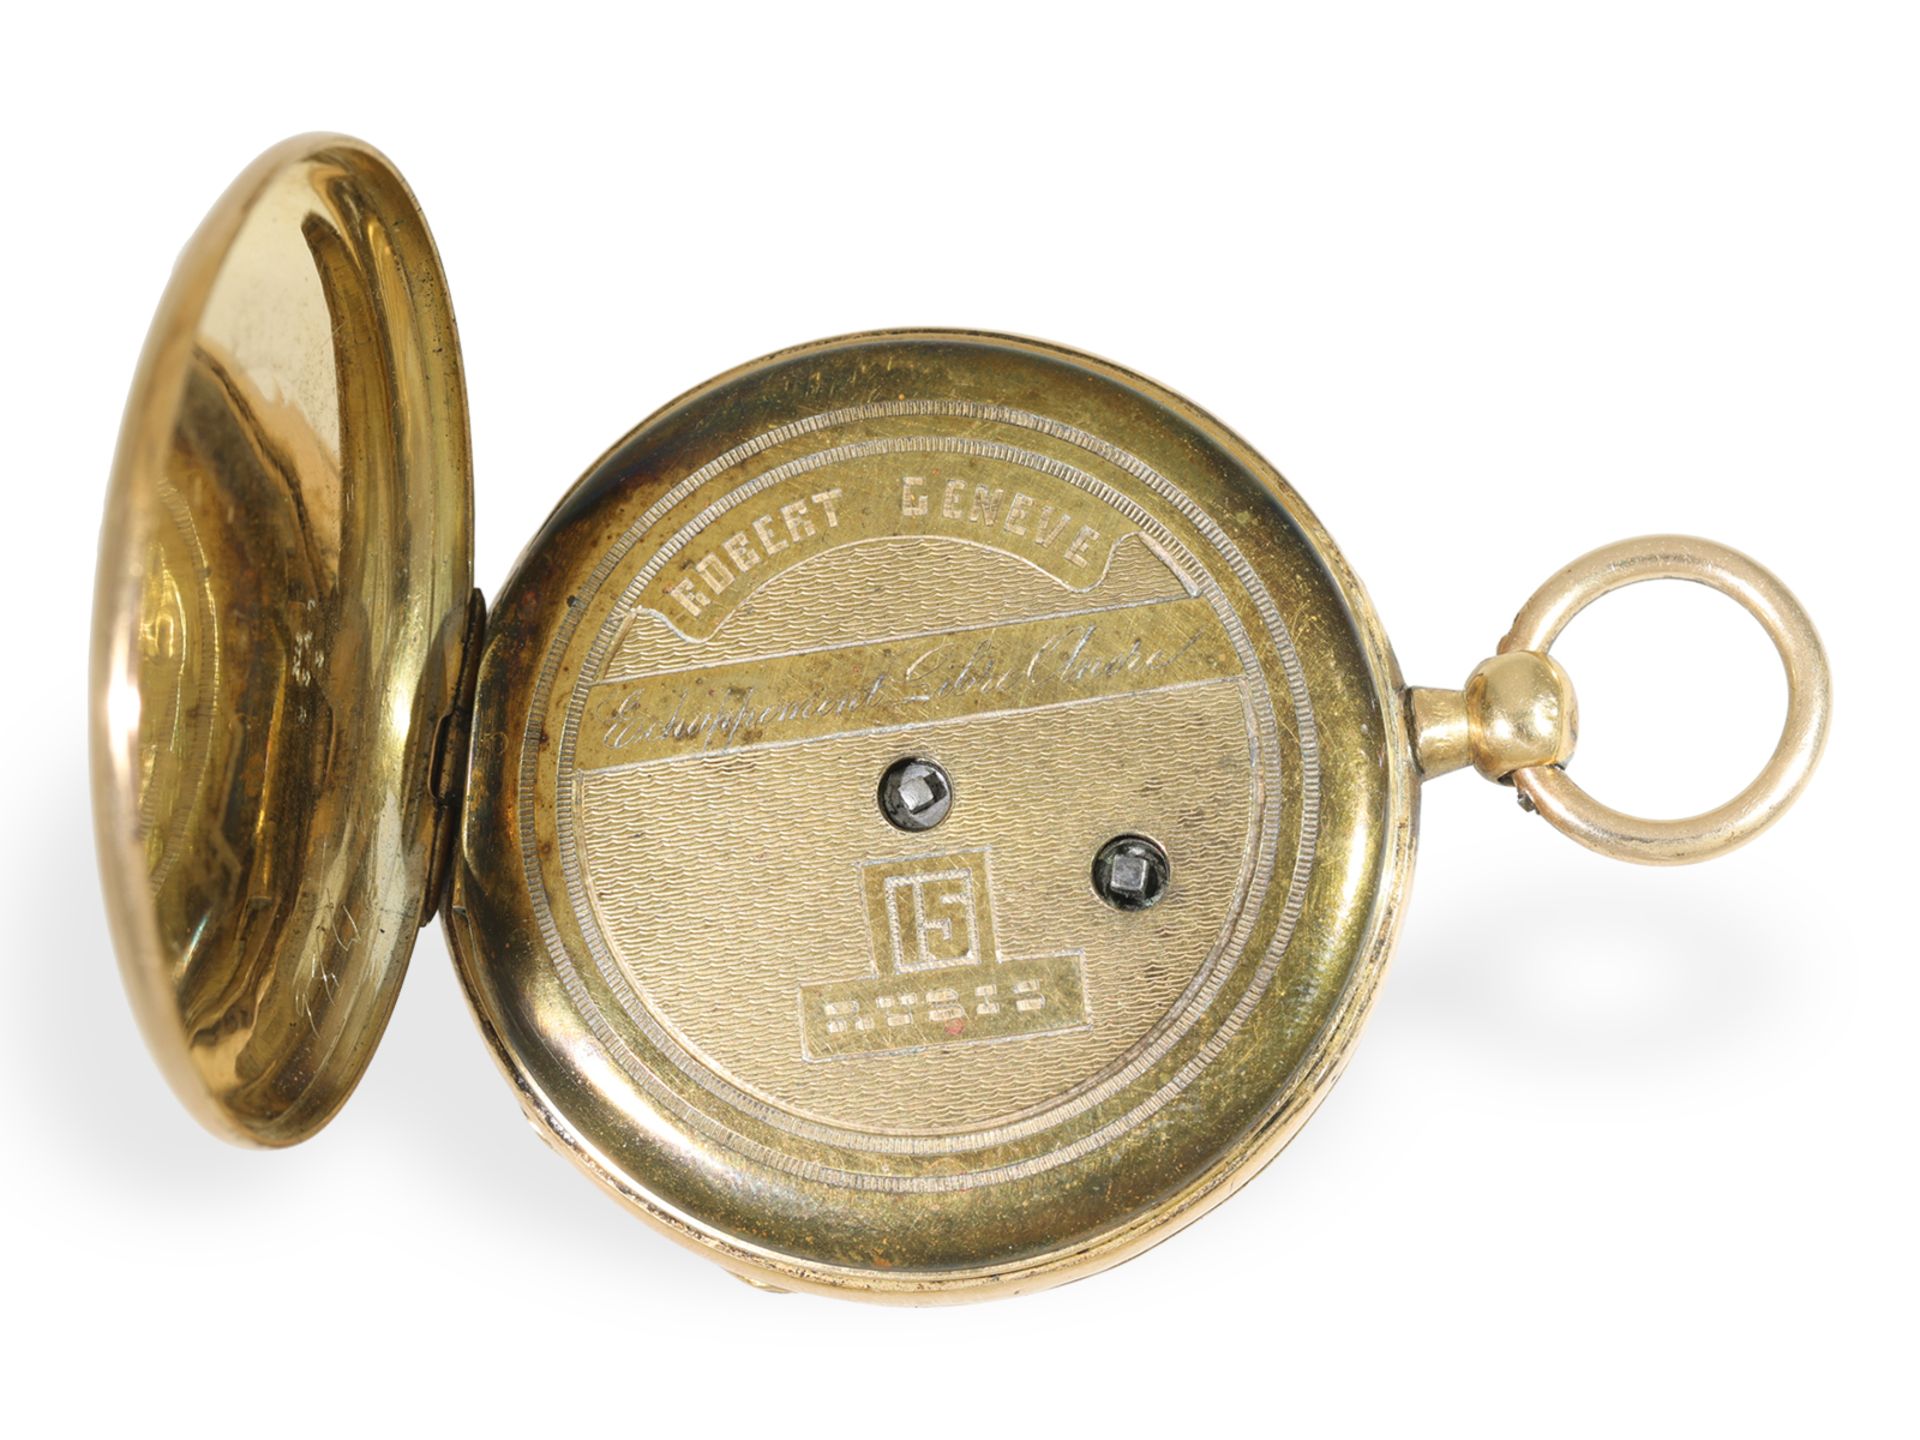 Taschenuhr: Frühe goldene Ankeruhr mit Kalender und Sekunde, Robert Geneve, ca. 1850 - Bild 4 aus 4